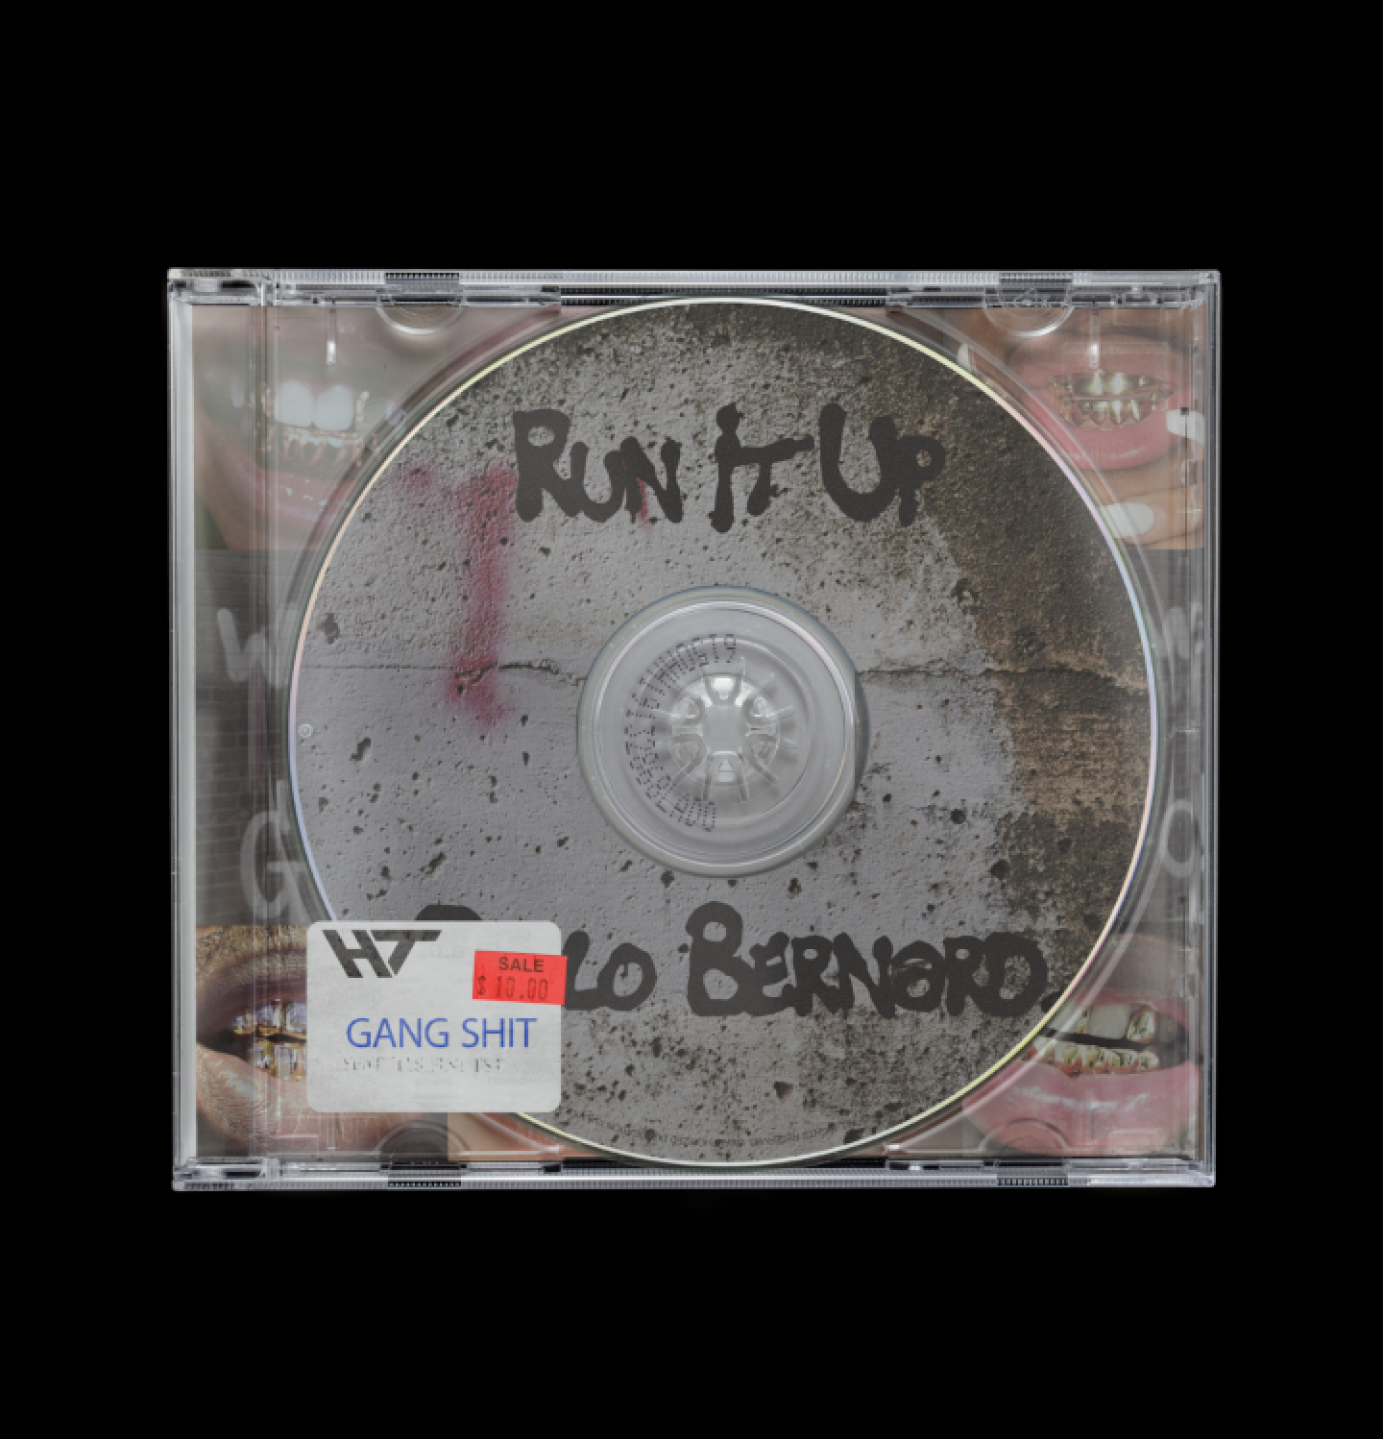 Pablo Bernard Cover art "Run it Up"